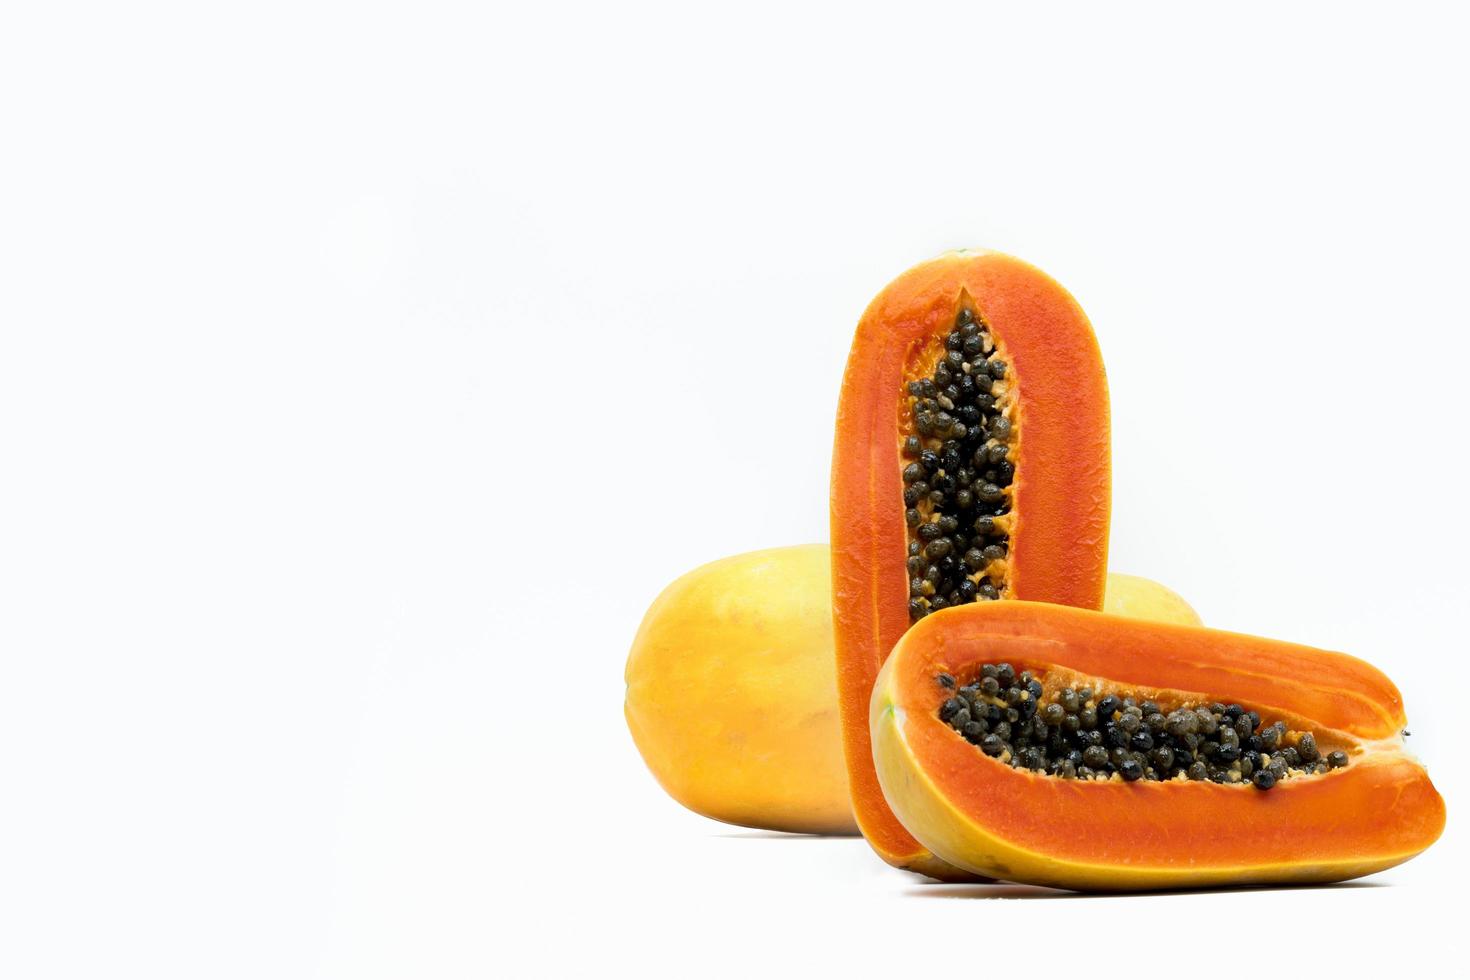 geheel en de helft van rijpe papaya fruit met zaden geïsoleerd op een witte achtergrond met kopie ruimte. natuurlijke bron van vitamine C, foliumzuur en mineralen. gezonde voeding voor zwangere vrouwen en vrouwen die borstvoeding geven foto